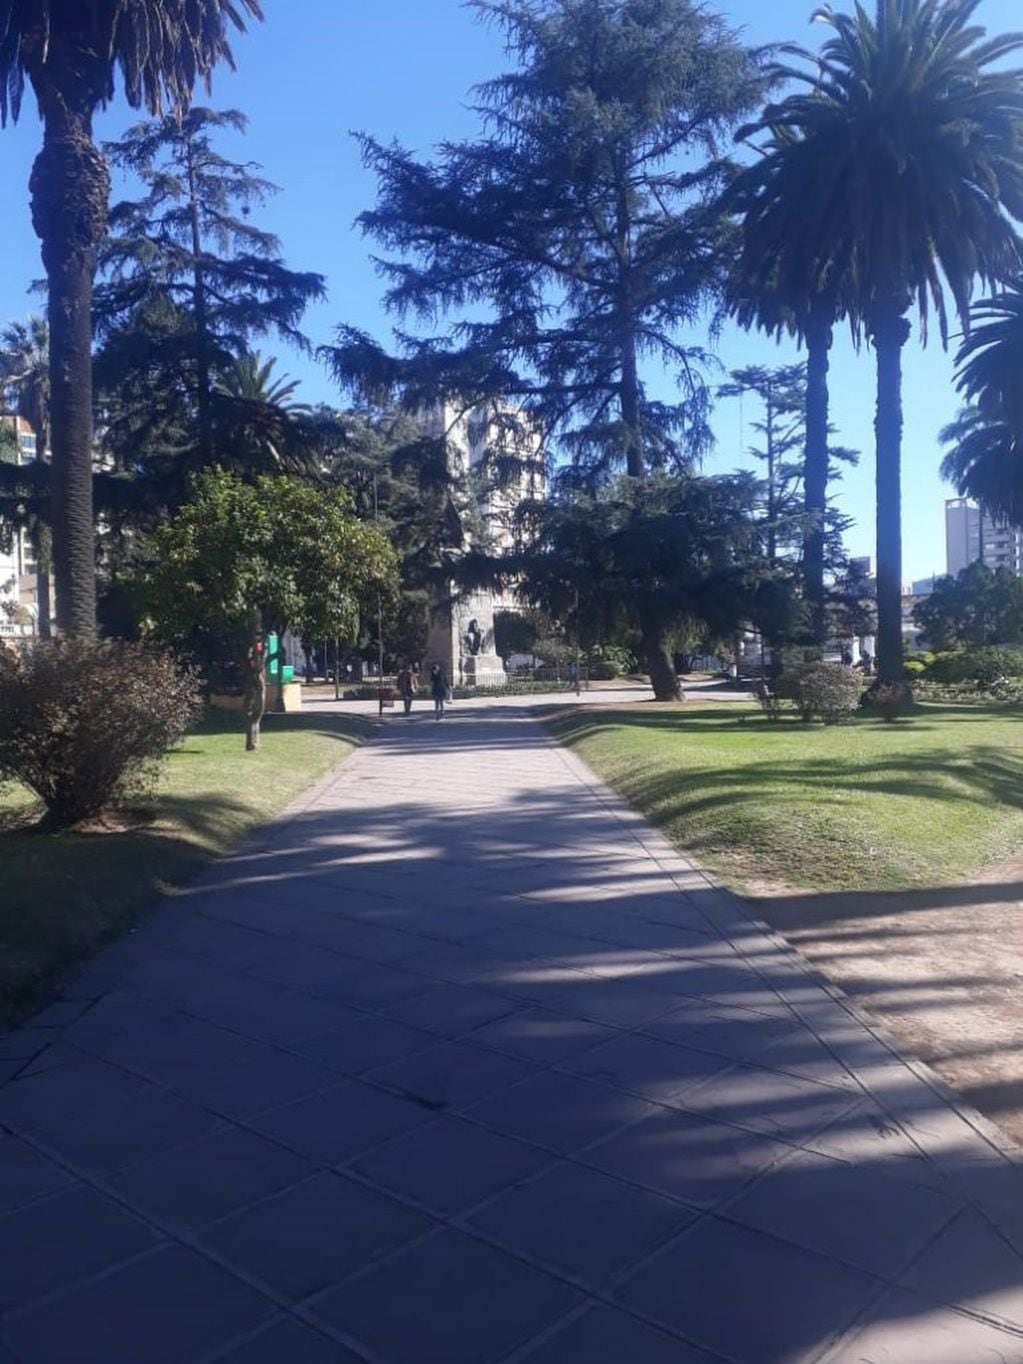 Lunes de paro la histórica Plaza Belgrano vacía